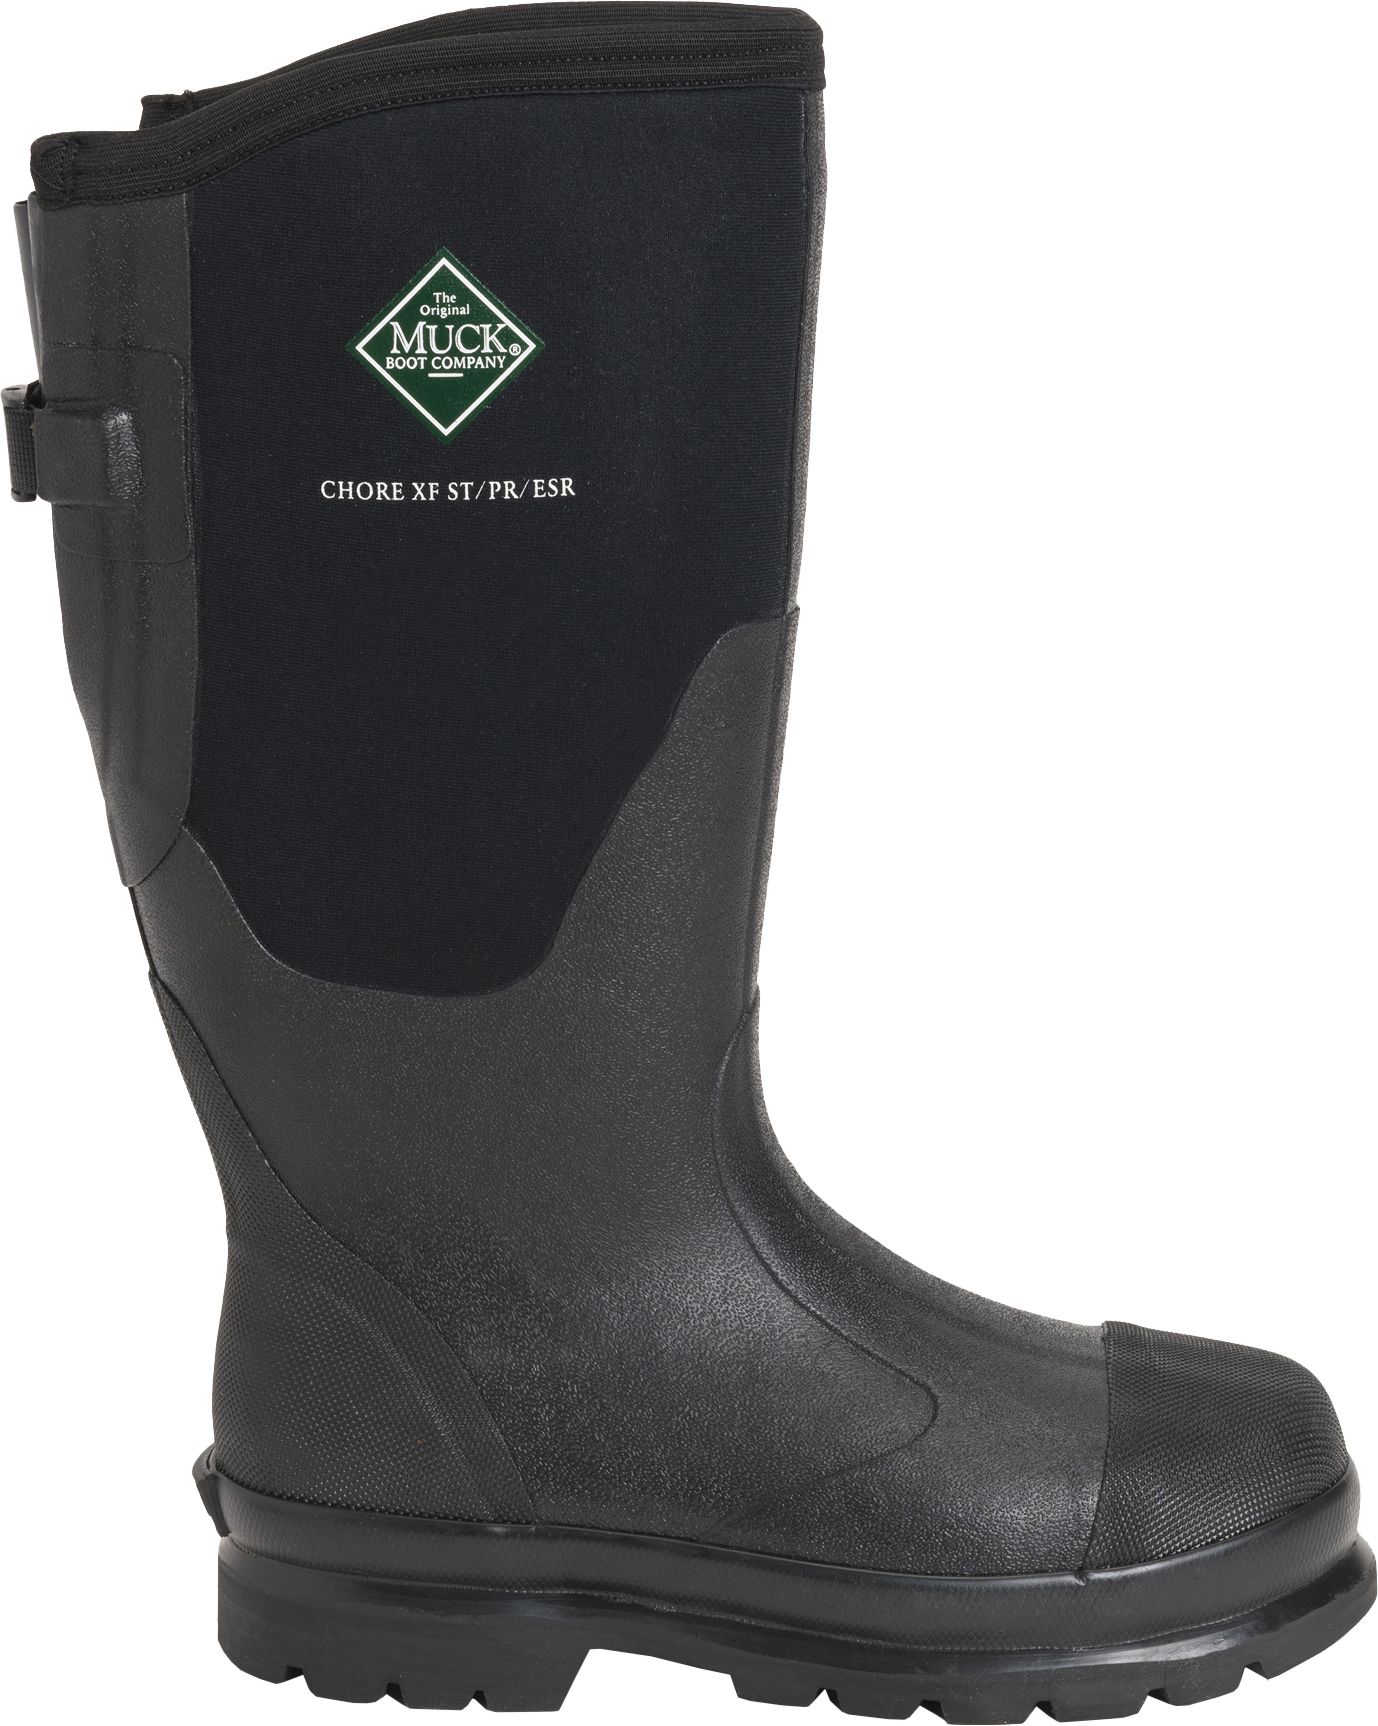 women's waterproof steel toe work boots